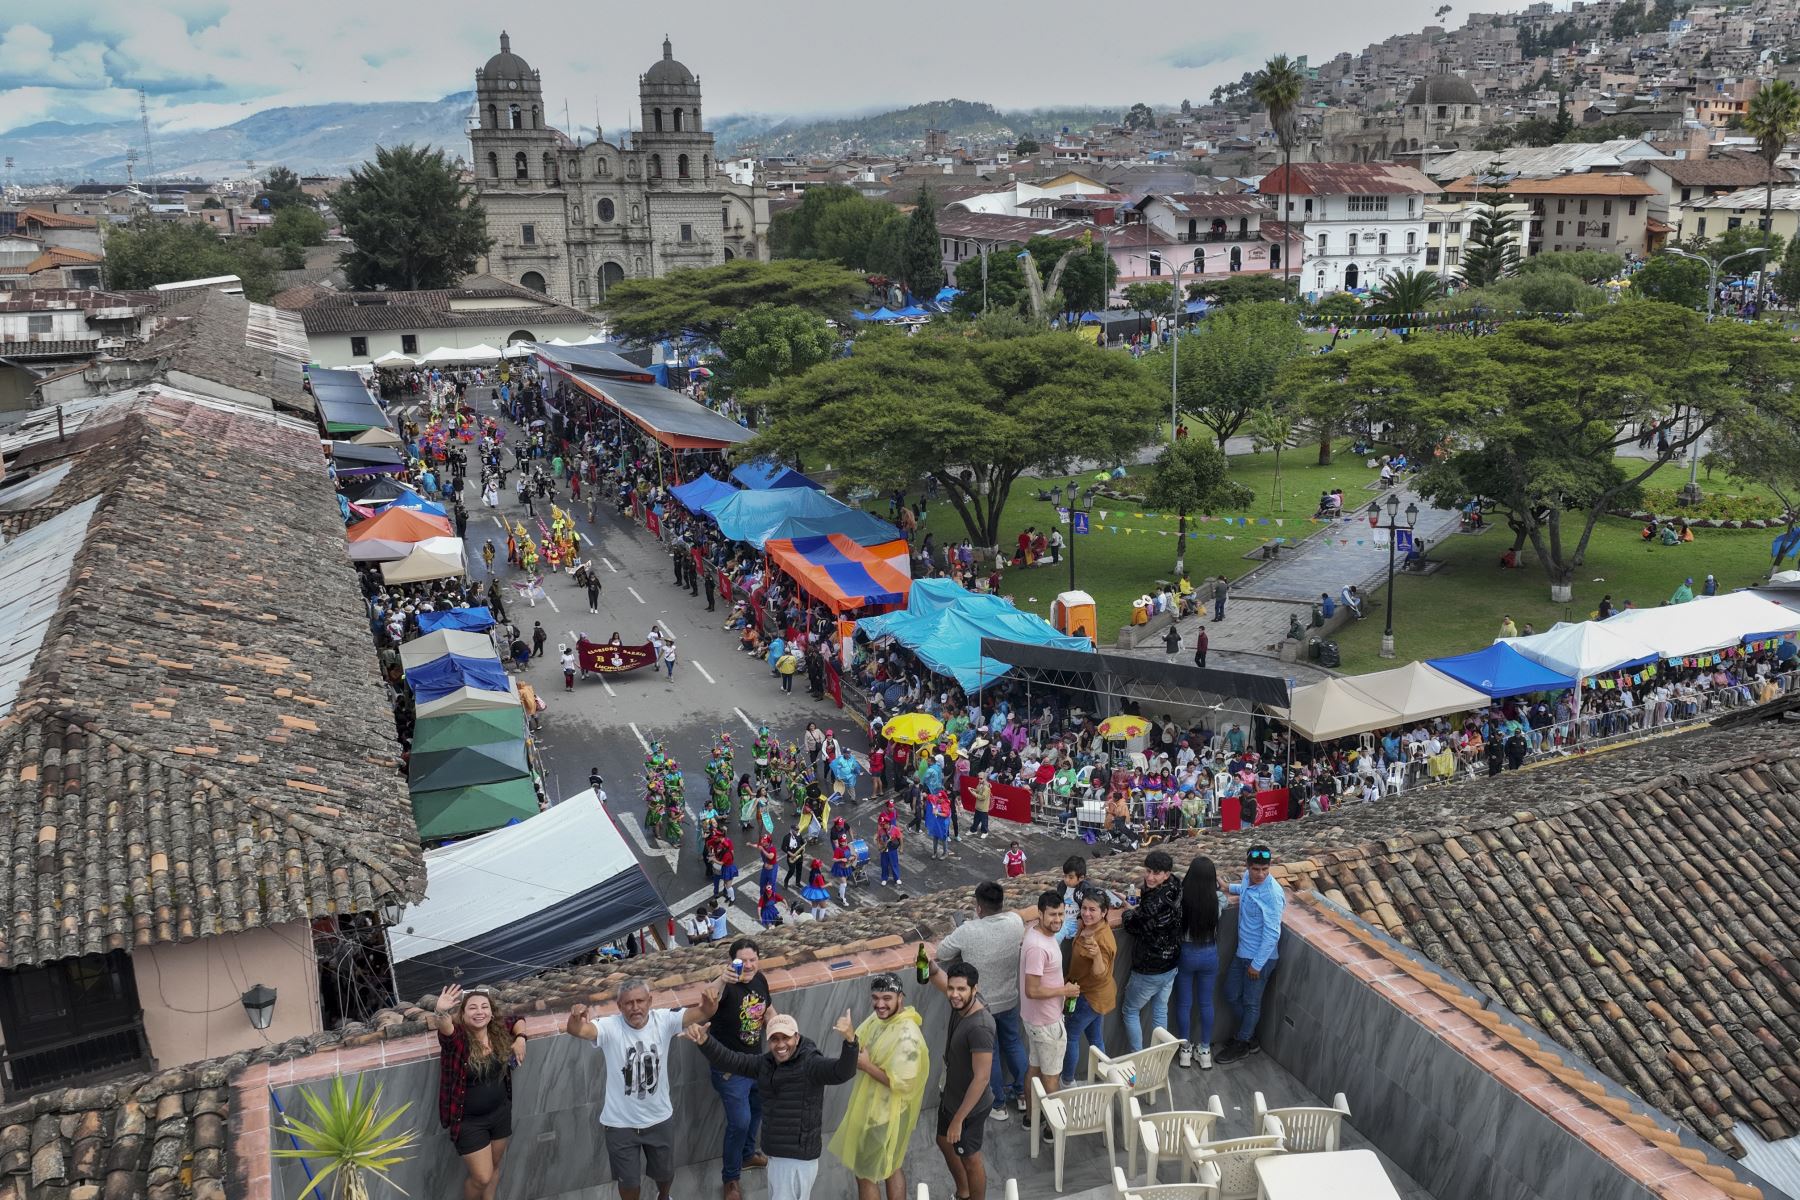 La magia del Carnaval se hizo presente una vez más en las calles de Cajamarca con el vibrante "Concurso de Patrullas y Comparsas", un espectáculo lleno de color, música y tradición que cautivó a los presentes y que ni la lluvia pudo parar.
Foto: ANDINA/Braian Reyna